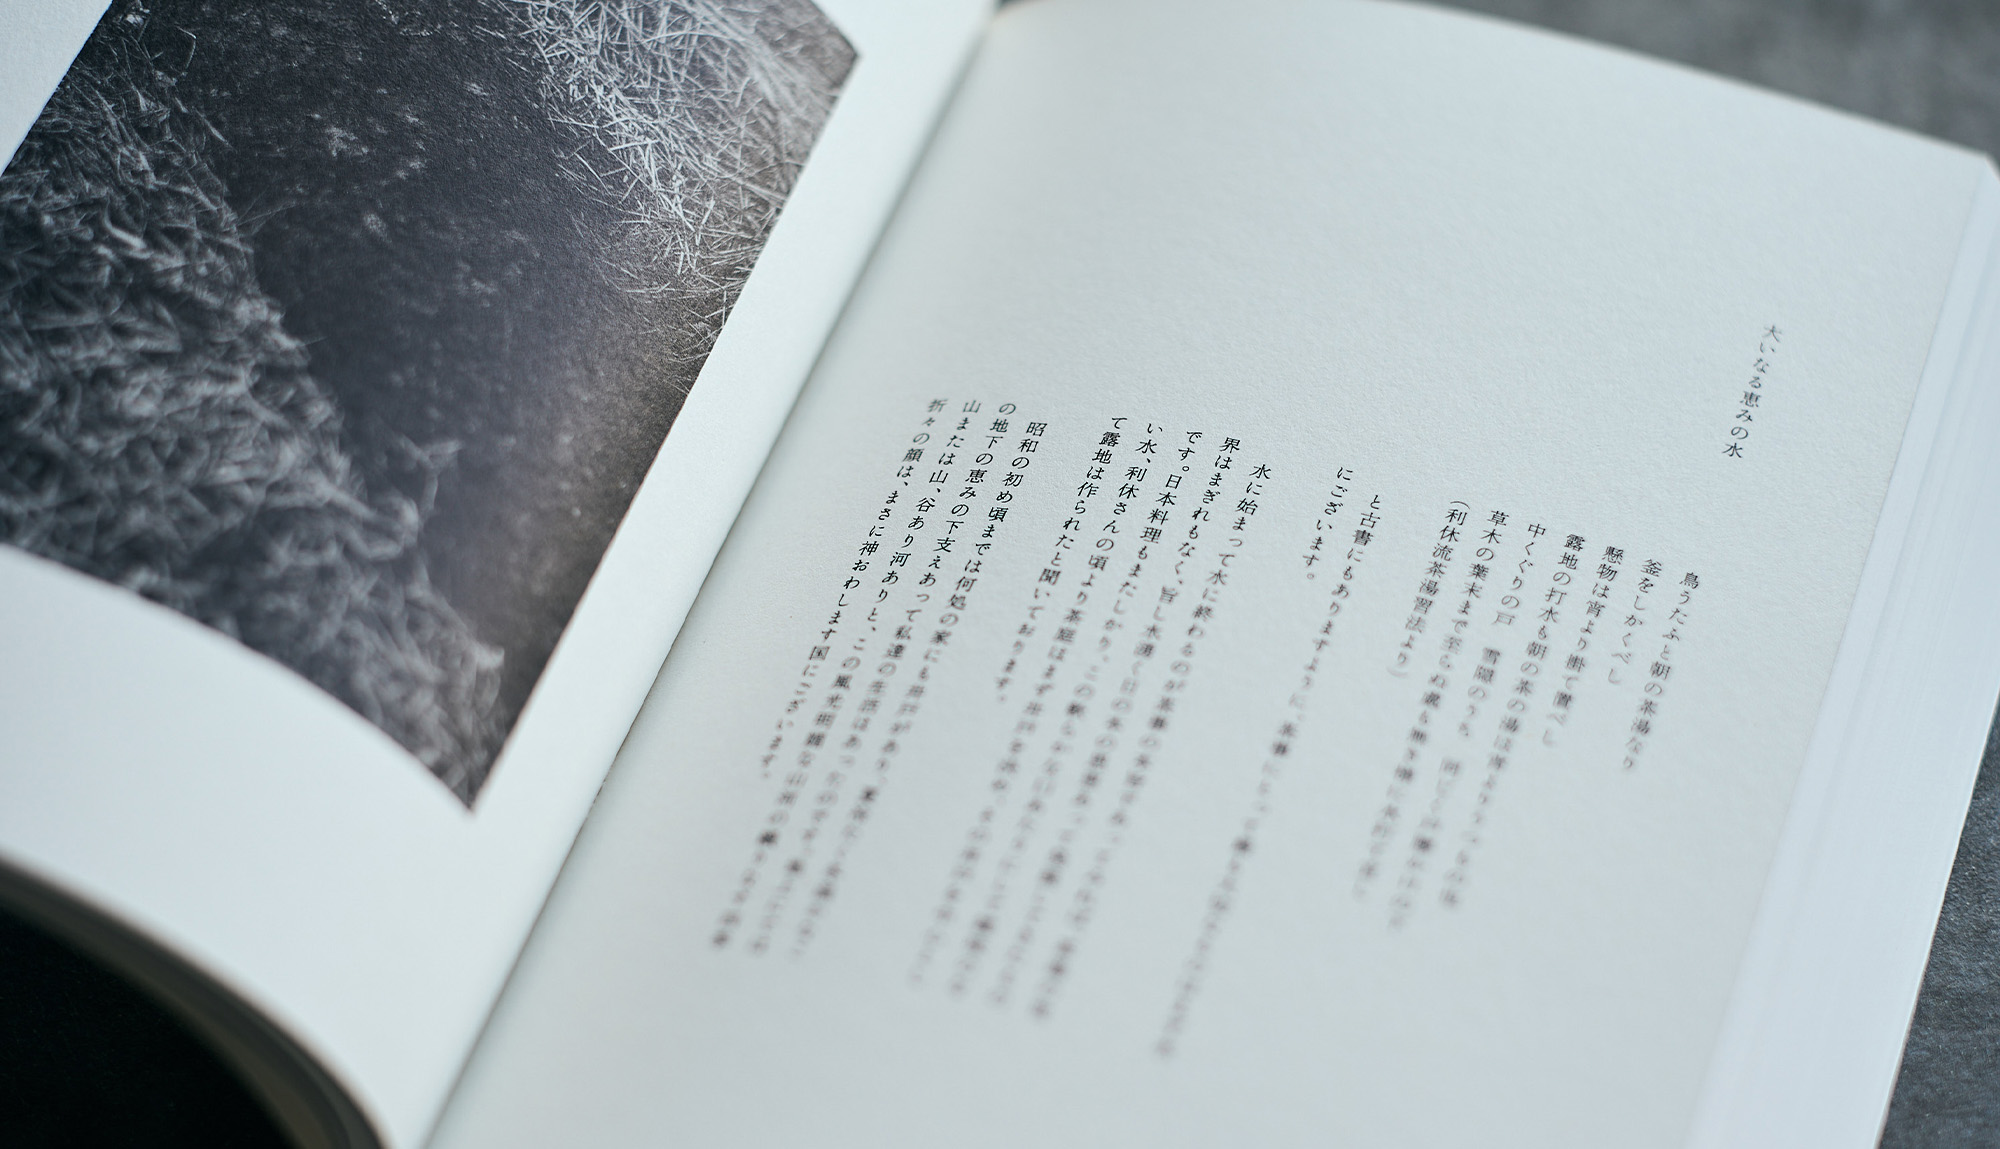 茶事懐石料理人 半澤鶴子著の本「鶴子」